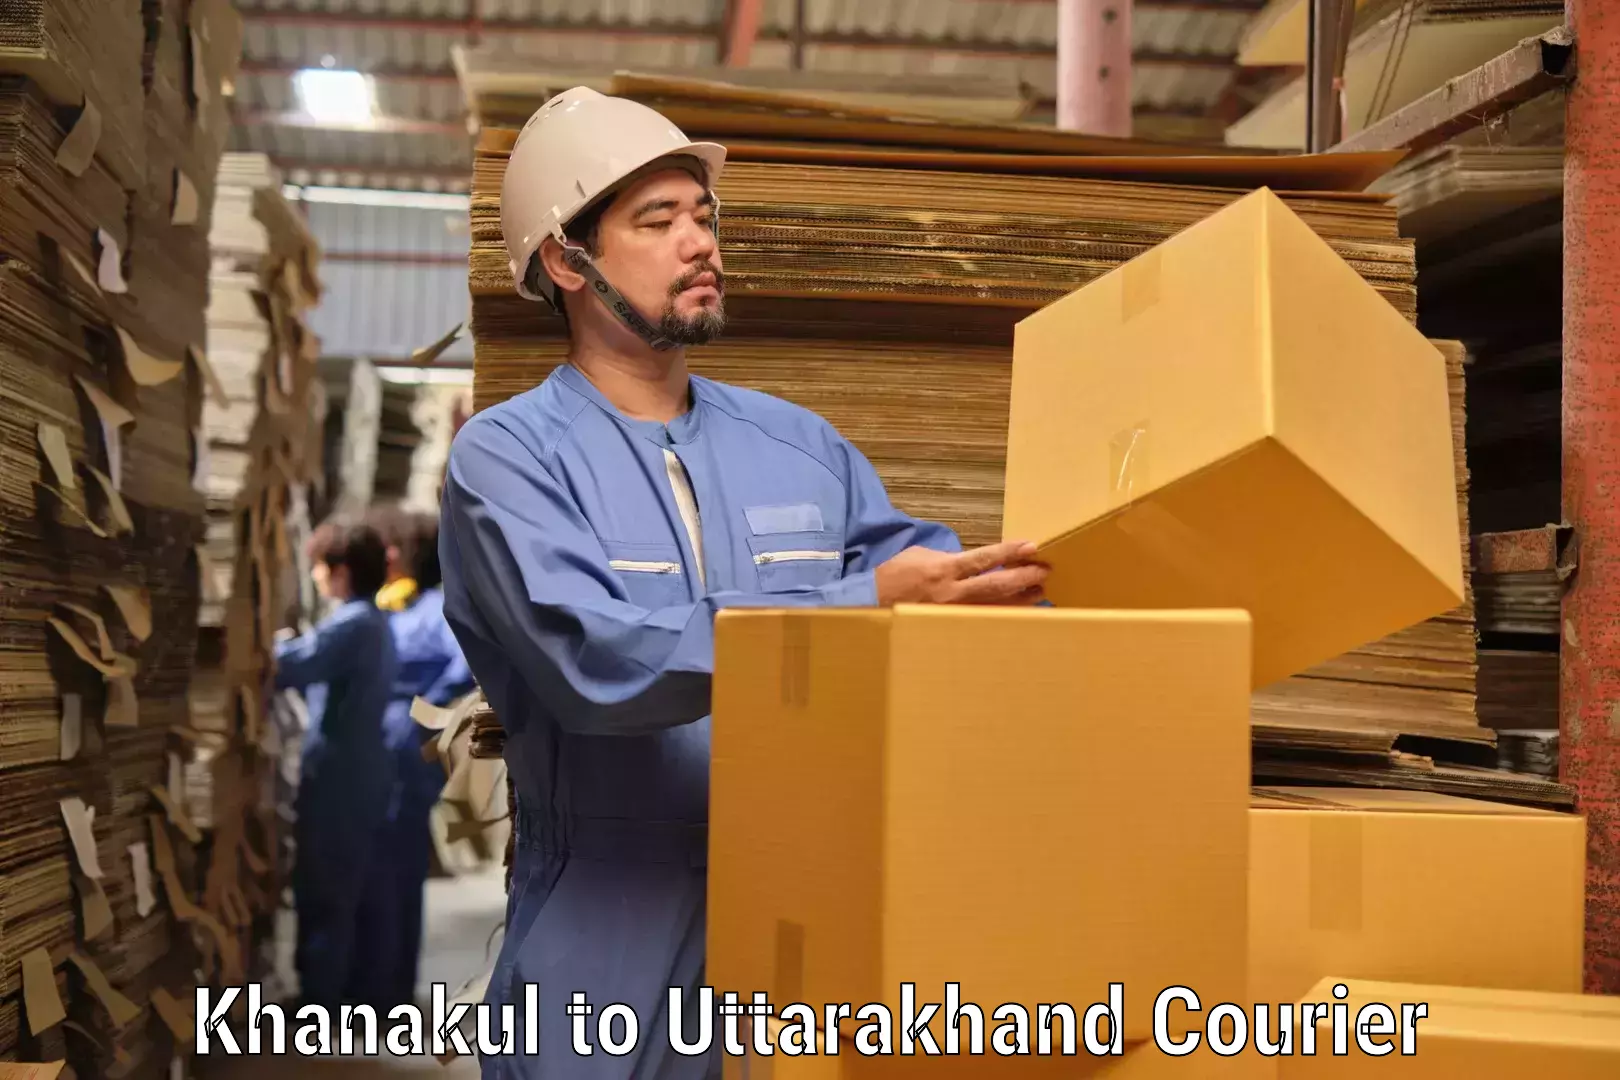 Customer-focused courier Khanakul to Uttarakhand